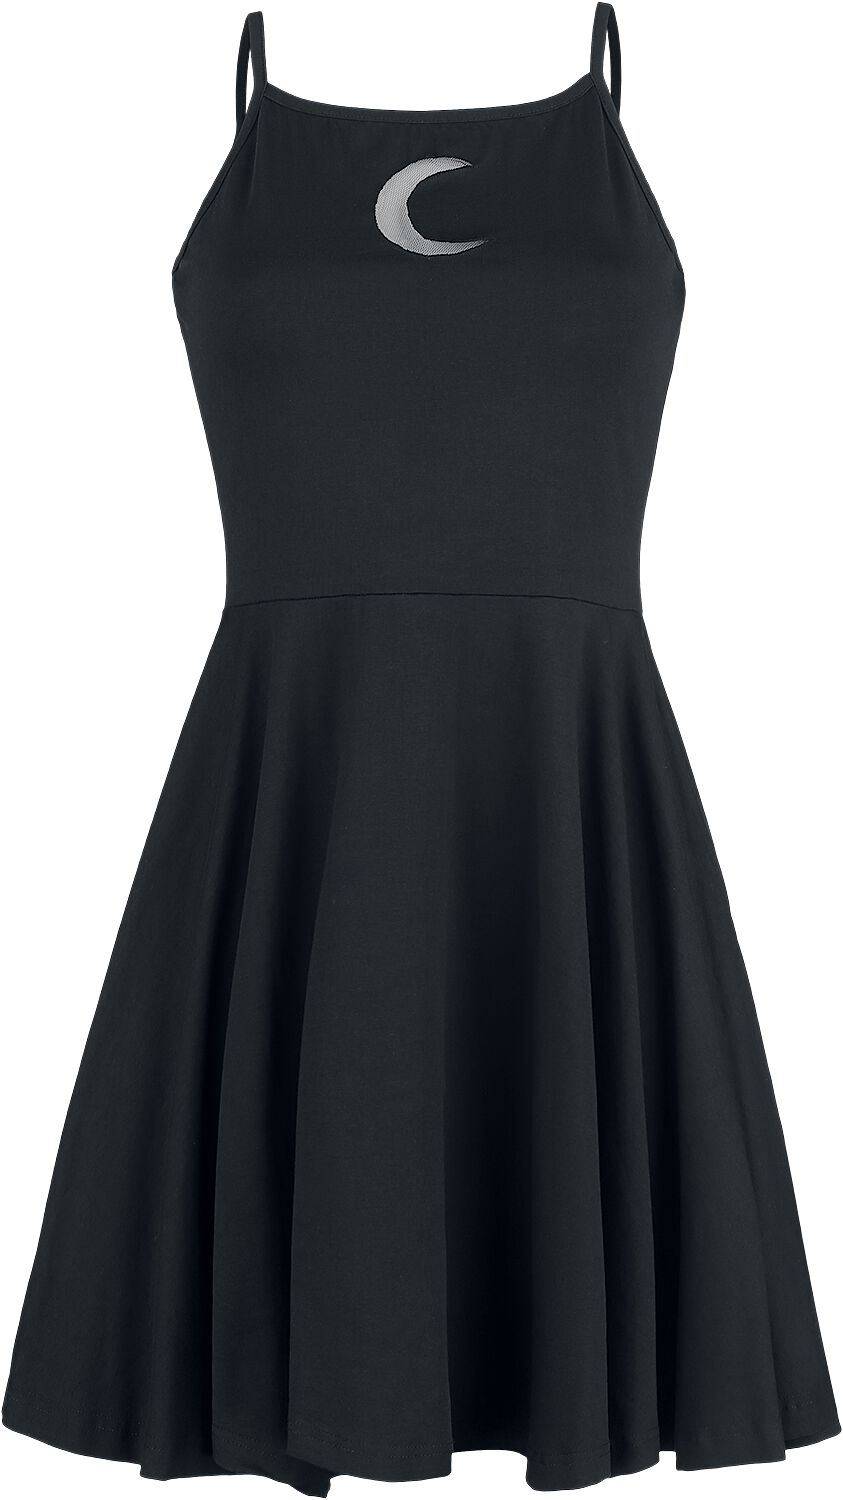 Heartless - Gothic Kurzes Kleid - Zaylee Dress - XS bis XL - für Damen - Größe XS - schwarz